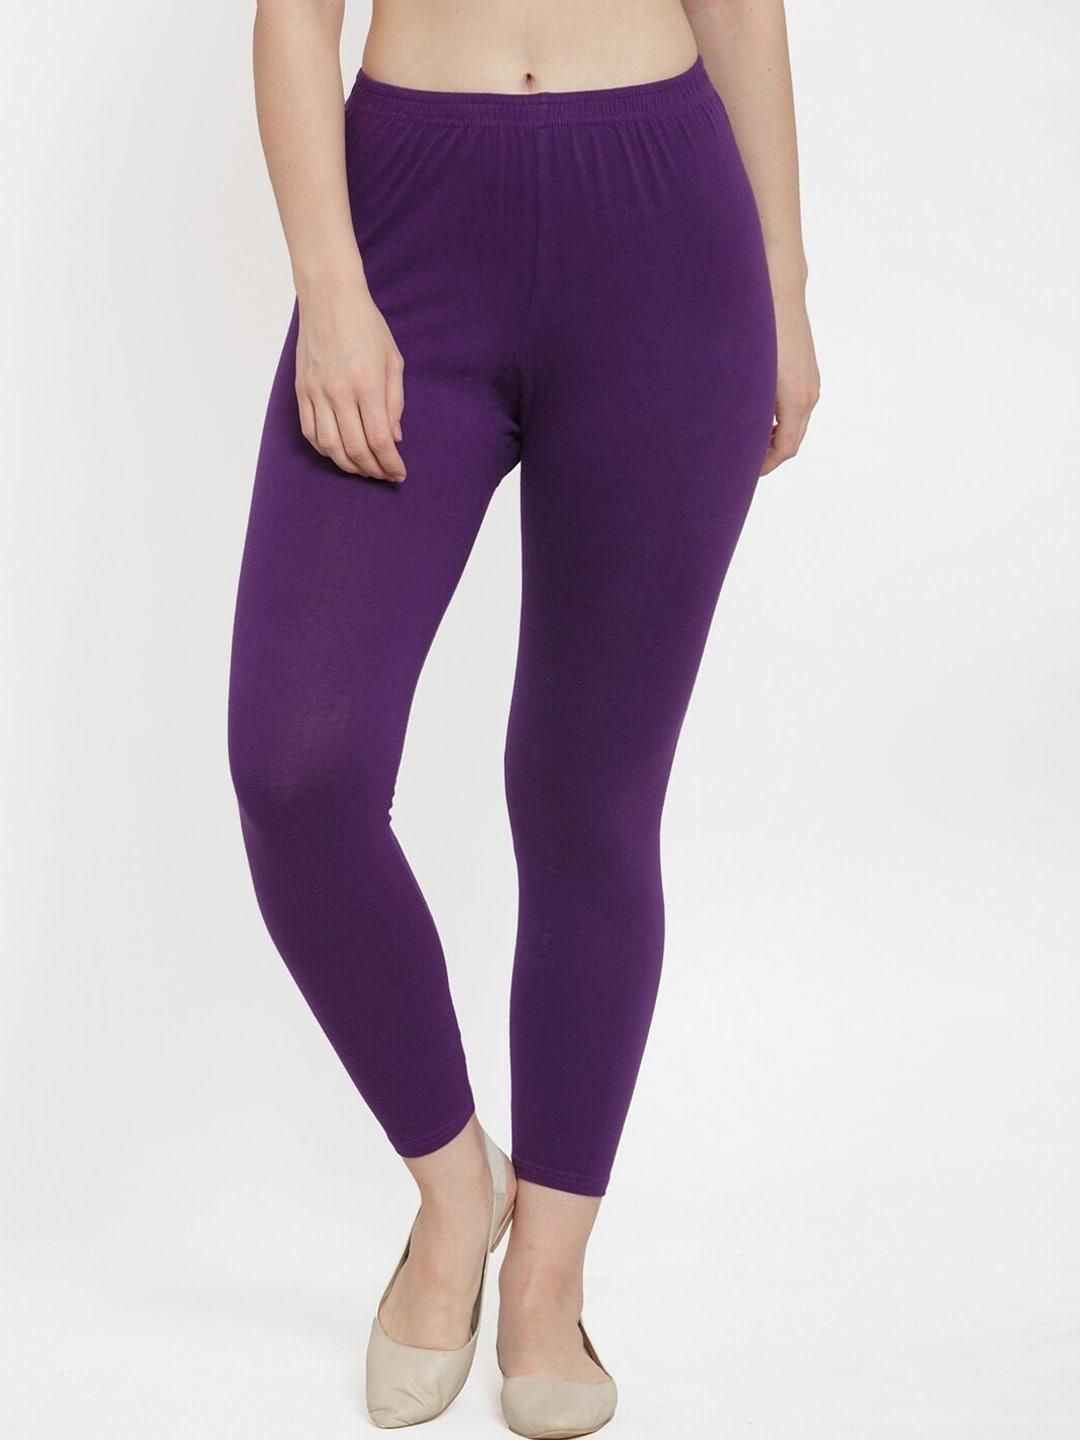 gracit-women-purple-solid-ankle-length-cotton-leggings